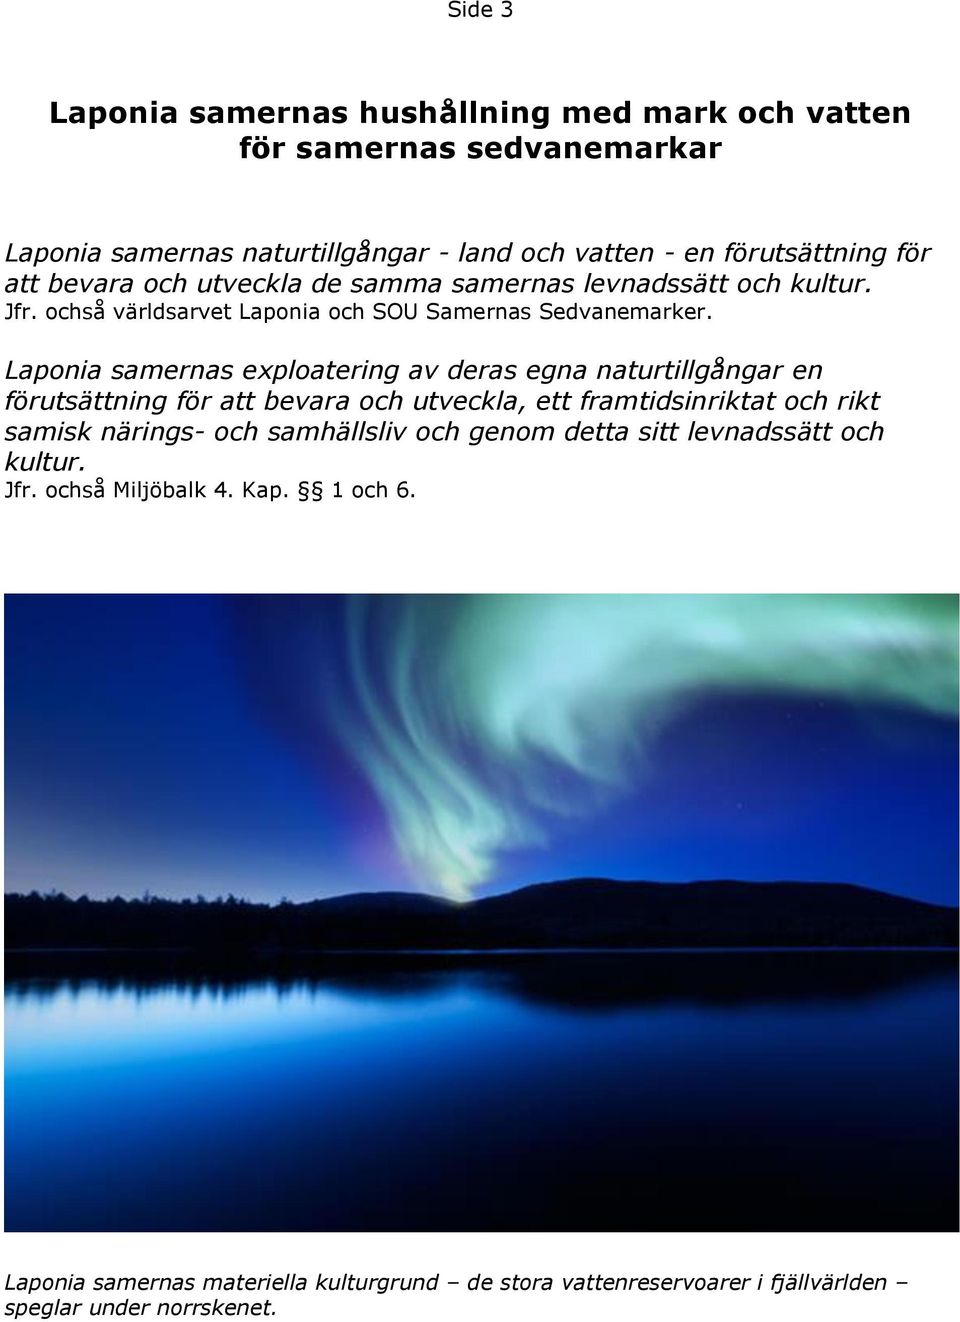 Laponia samernas exploatering av deras egna naturtillgångar en förutsättning för att bevara och utveckla, ett framtidsinriktat och rikt samisk närings- och